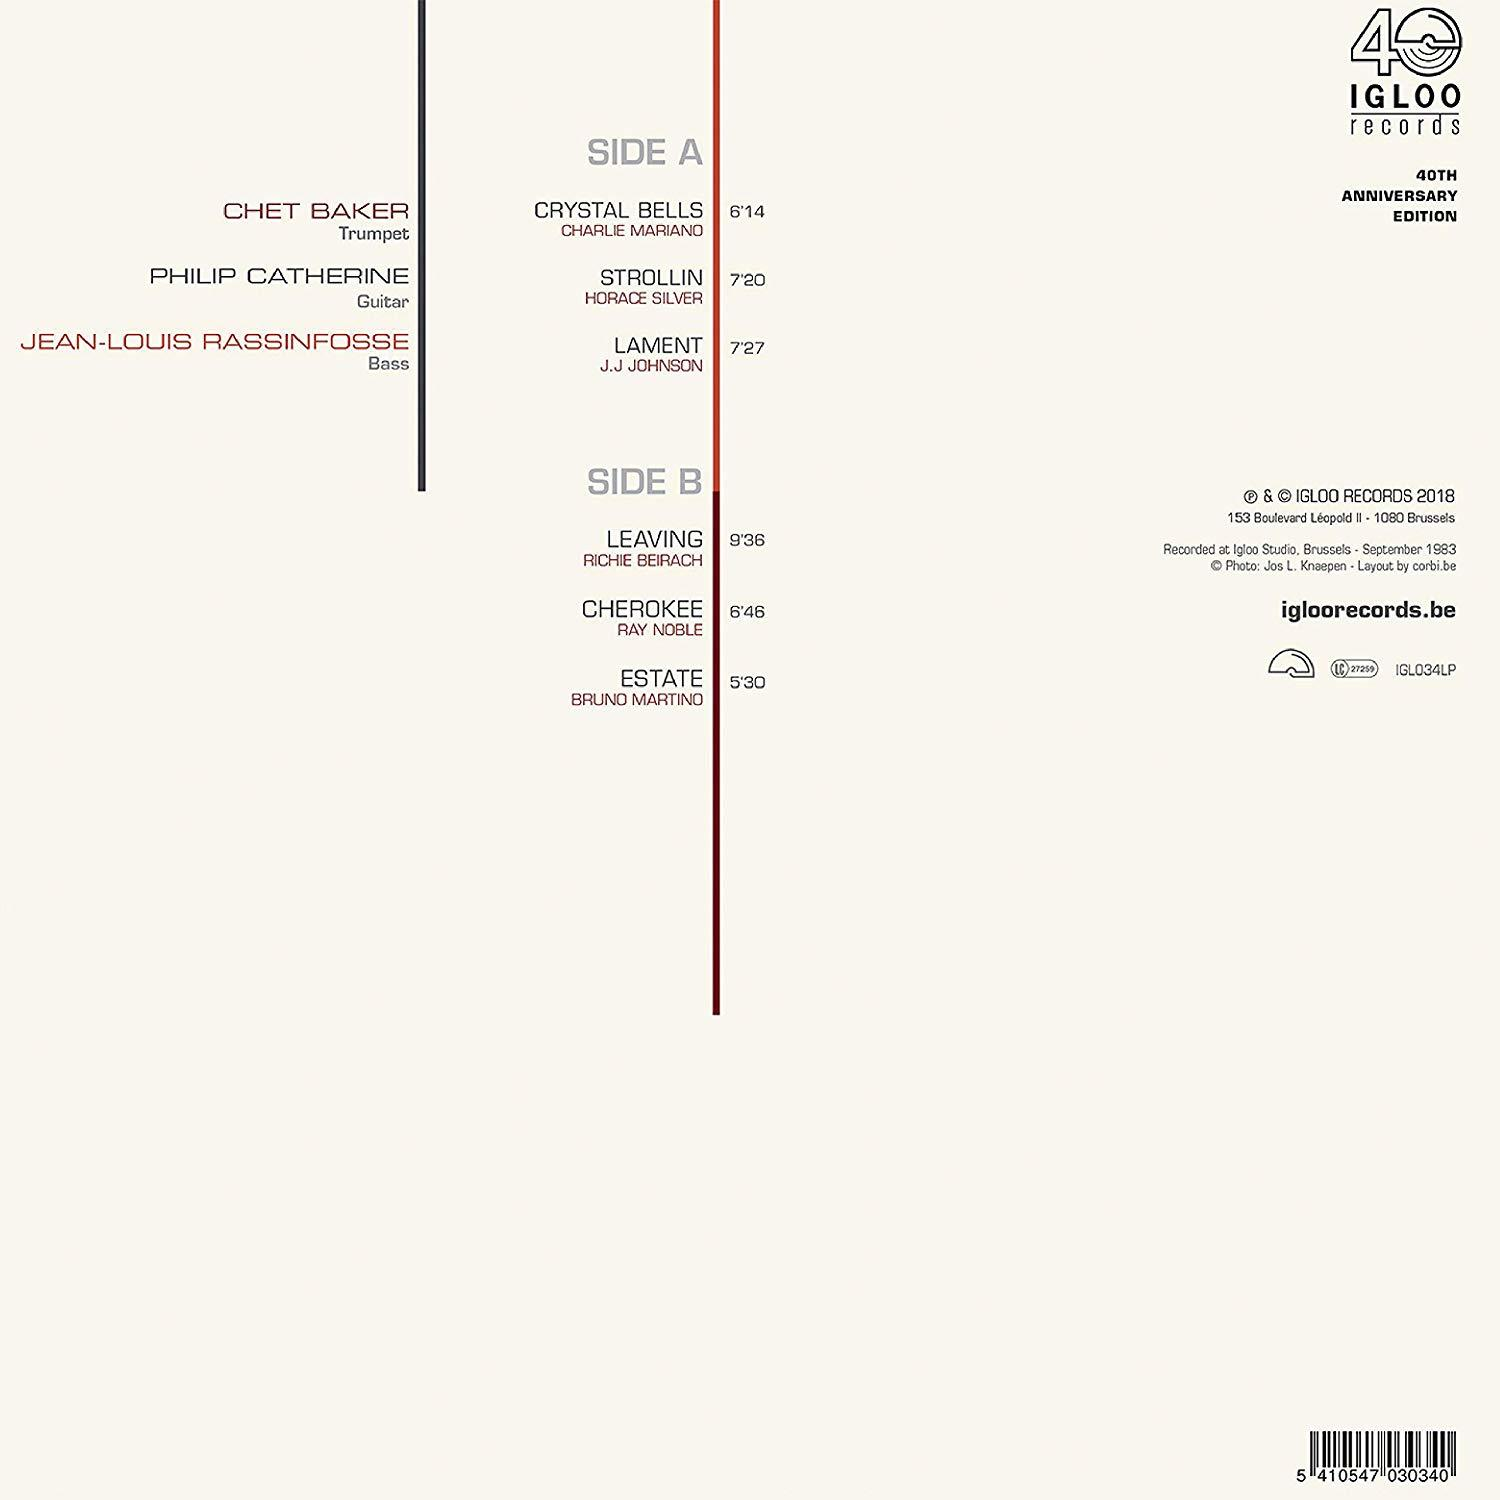 Chet Baker, Philip Crystal Jean-louis (Vinyl) Catherine, Rassinfosse - (LP) - Bells